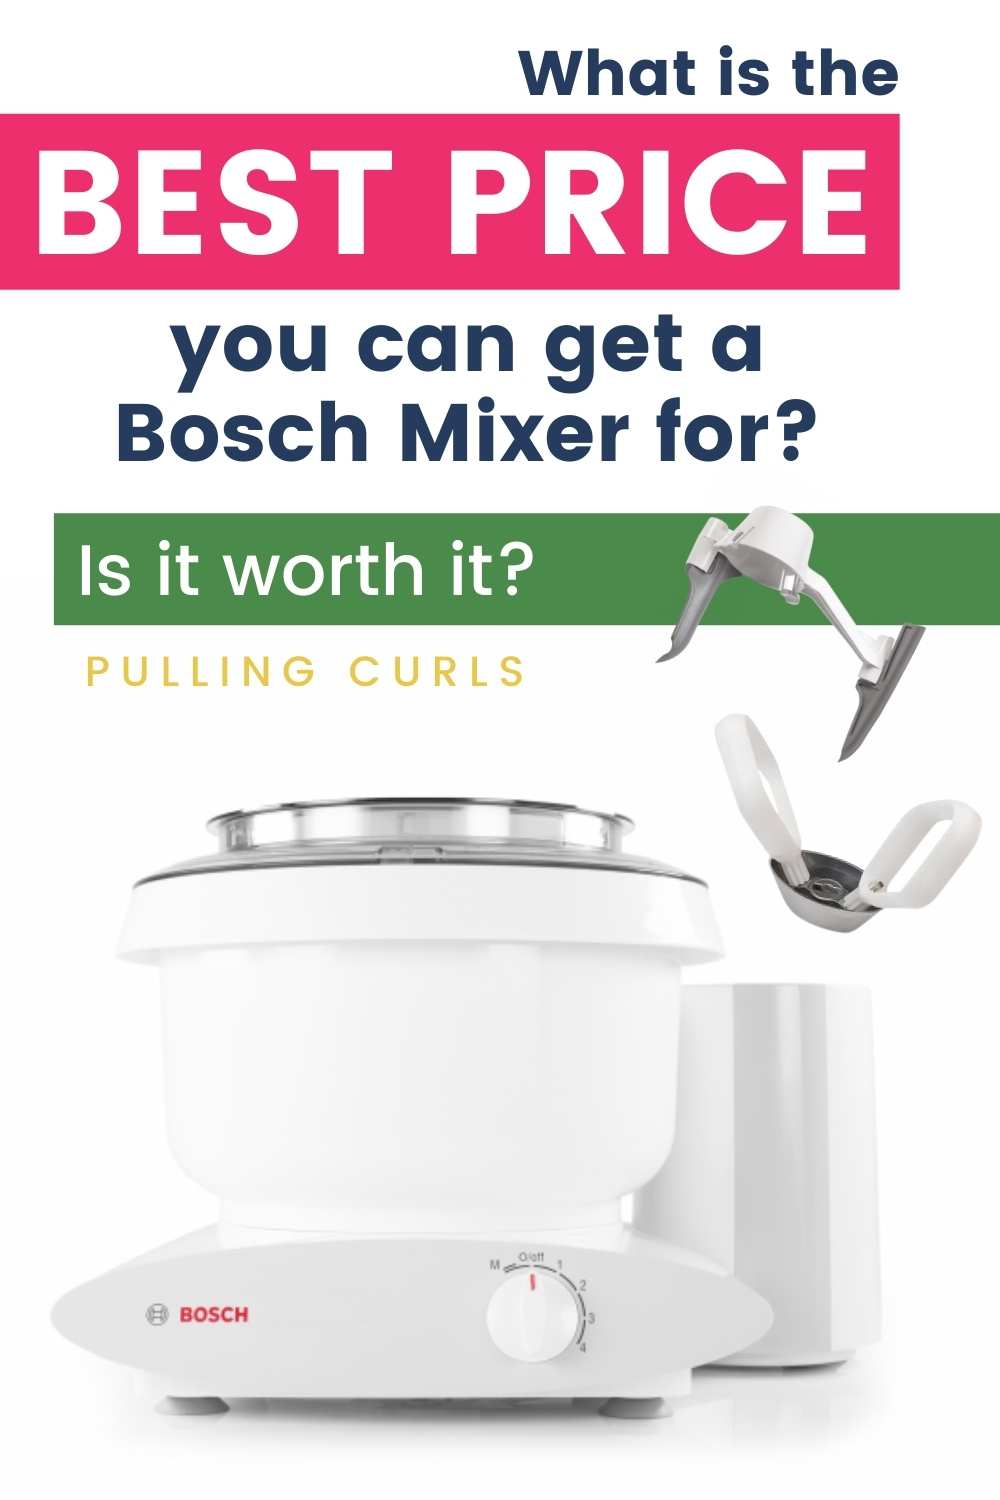 Bosch Mixer via @pullingcurls